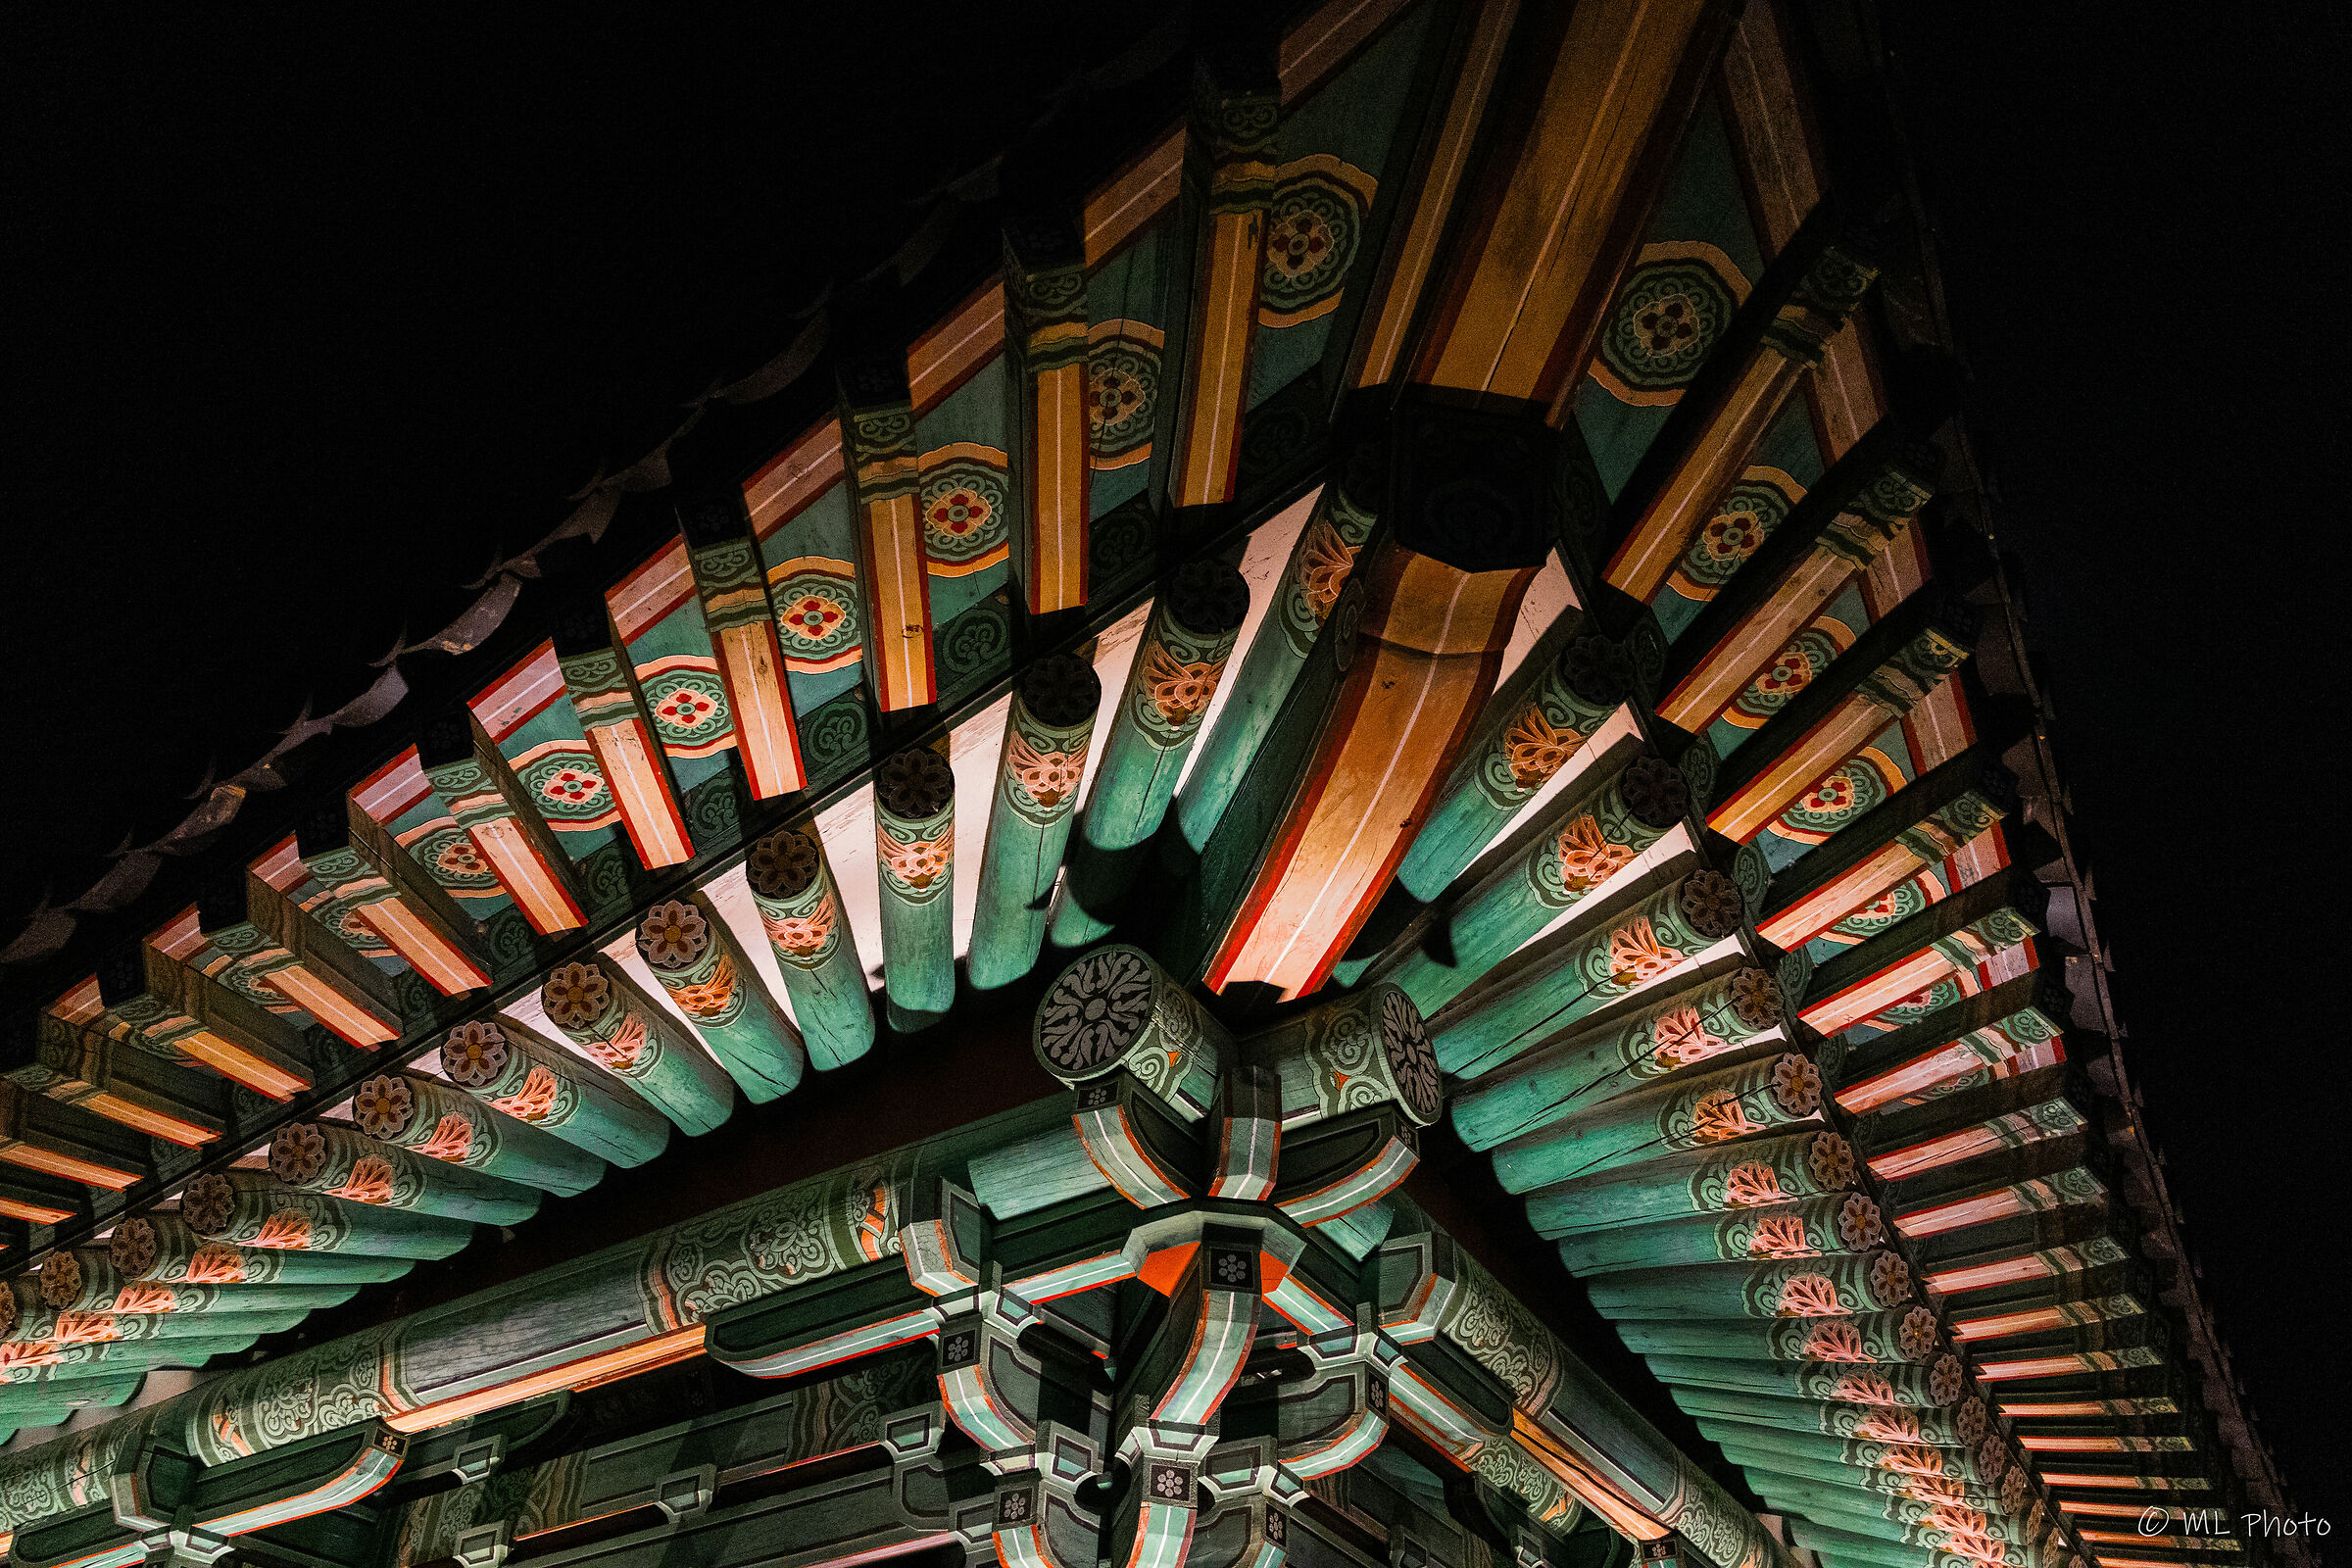 Donggung palace detail...